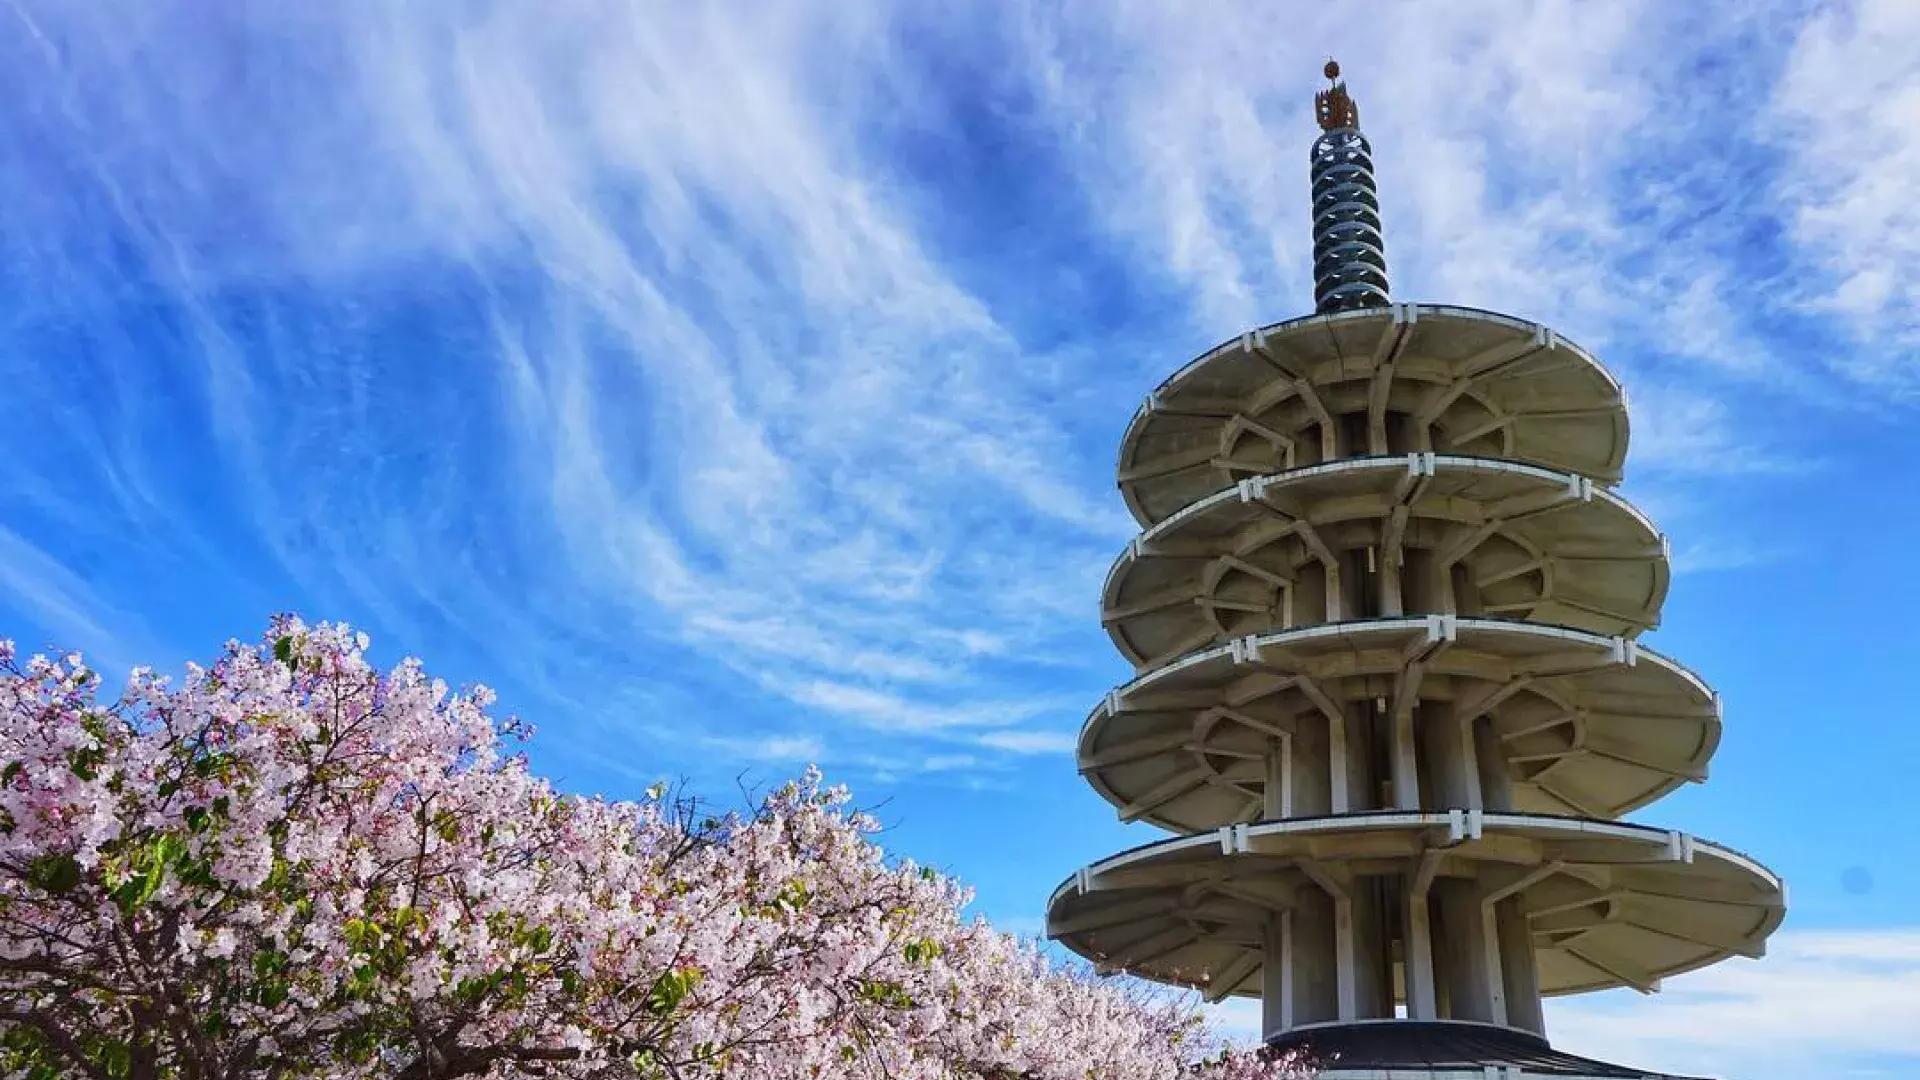 ジャパンタウンの平和塔